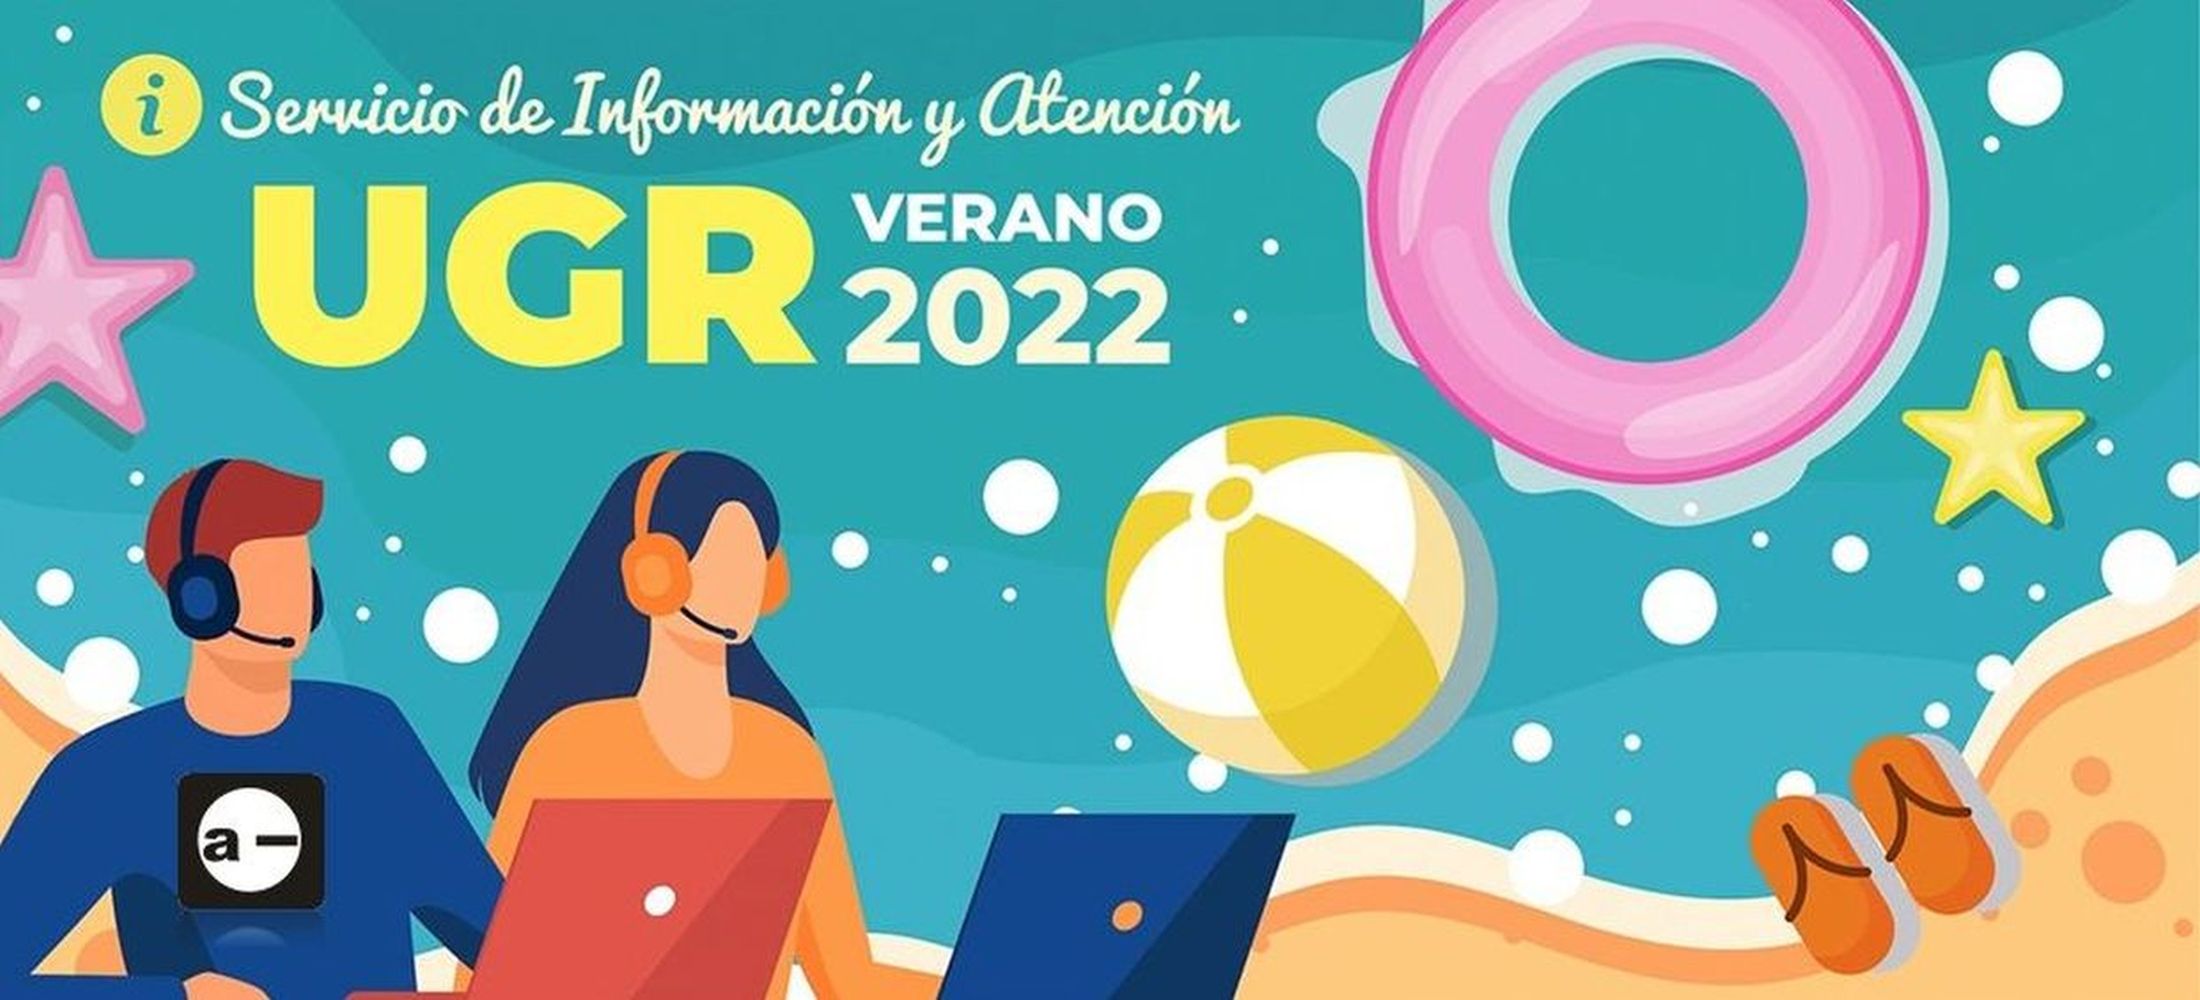 Servicio de información y atención - ETSAG UGR Verano 2022